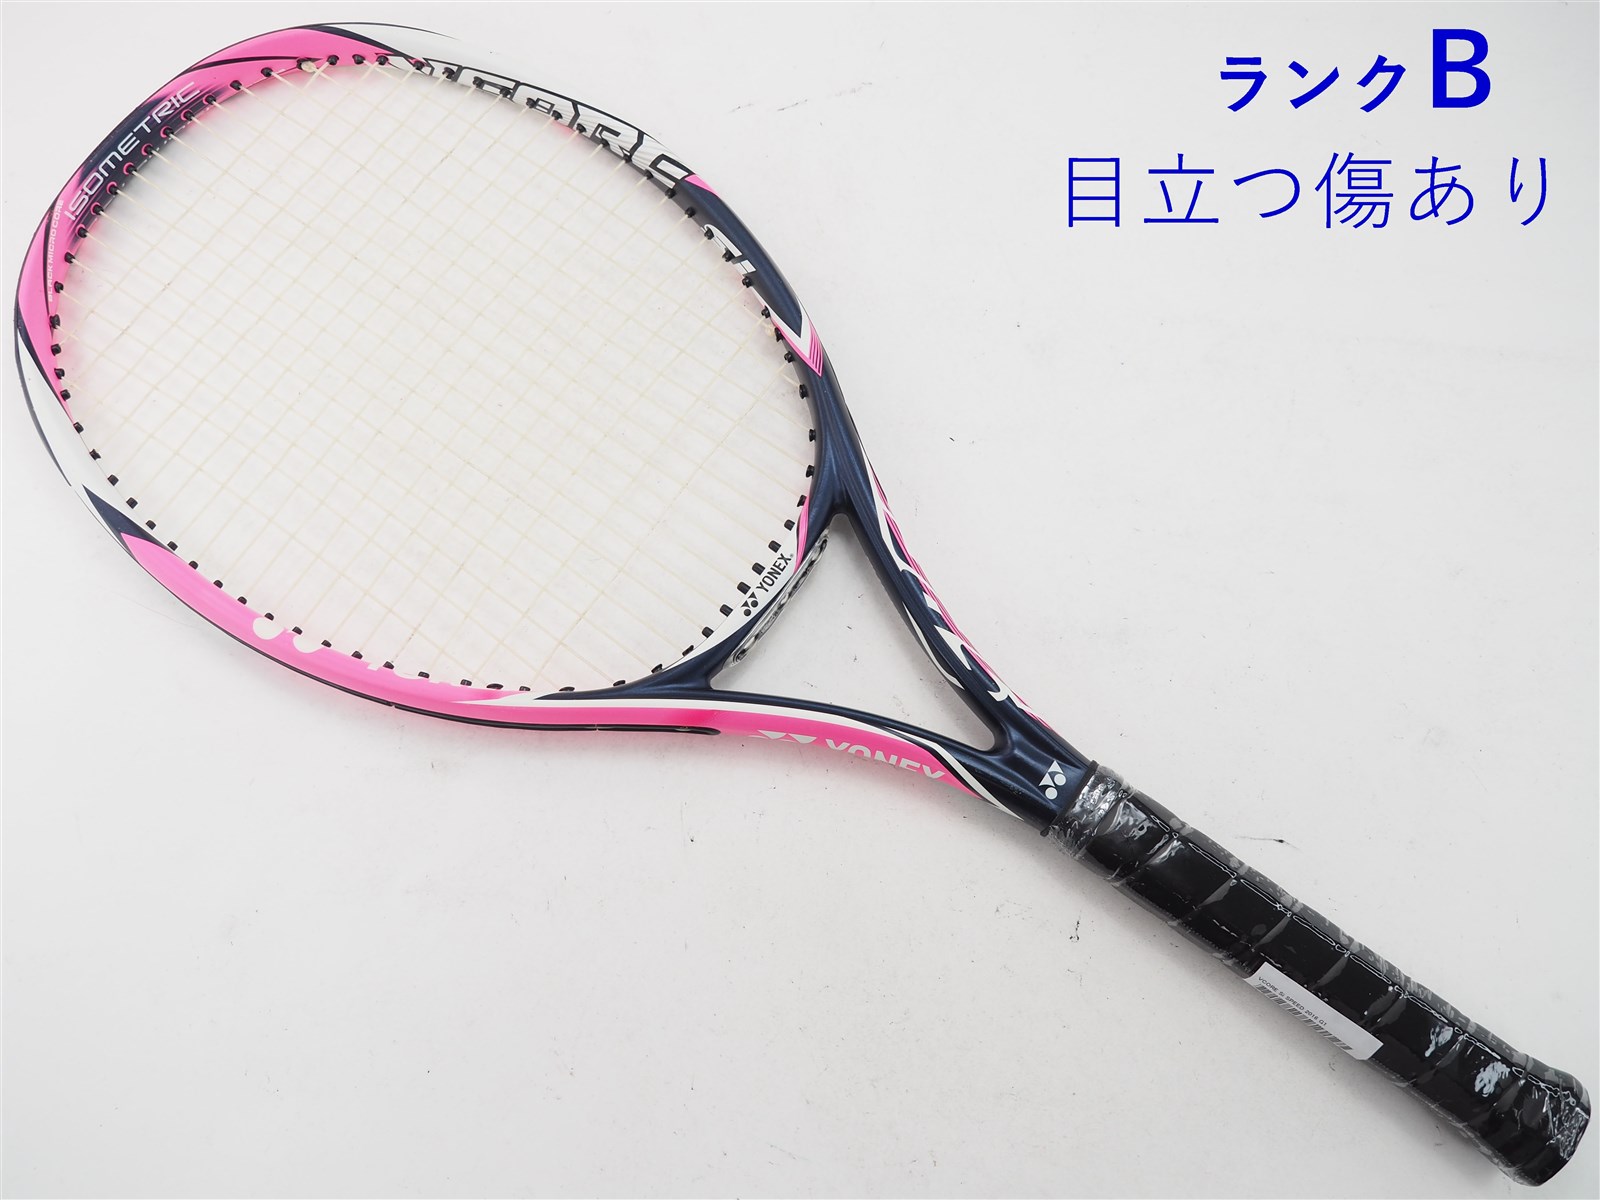 テニスラケット ヨネックス ブイコア エスアイ スピード 2016年モデル